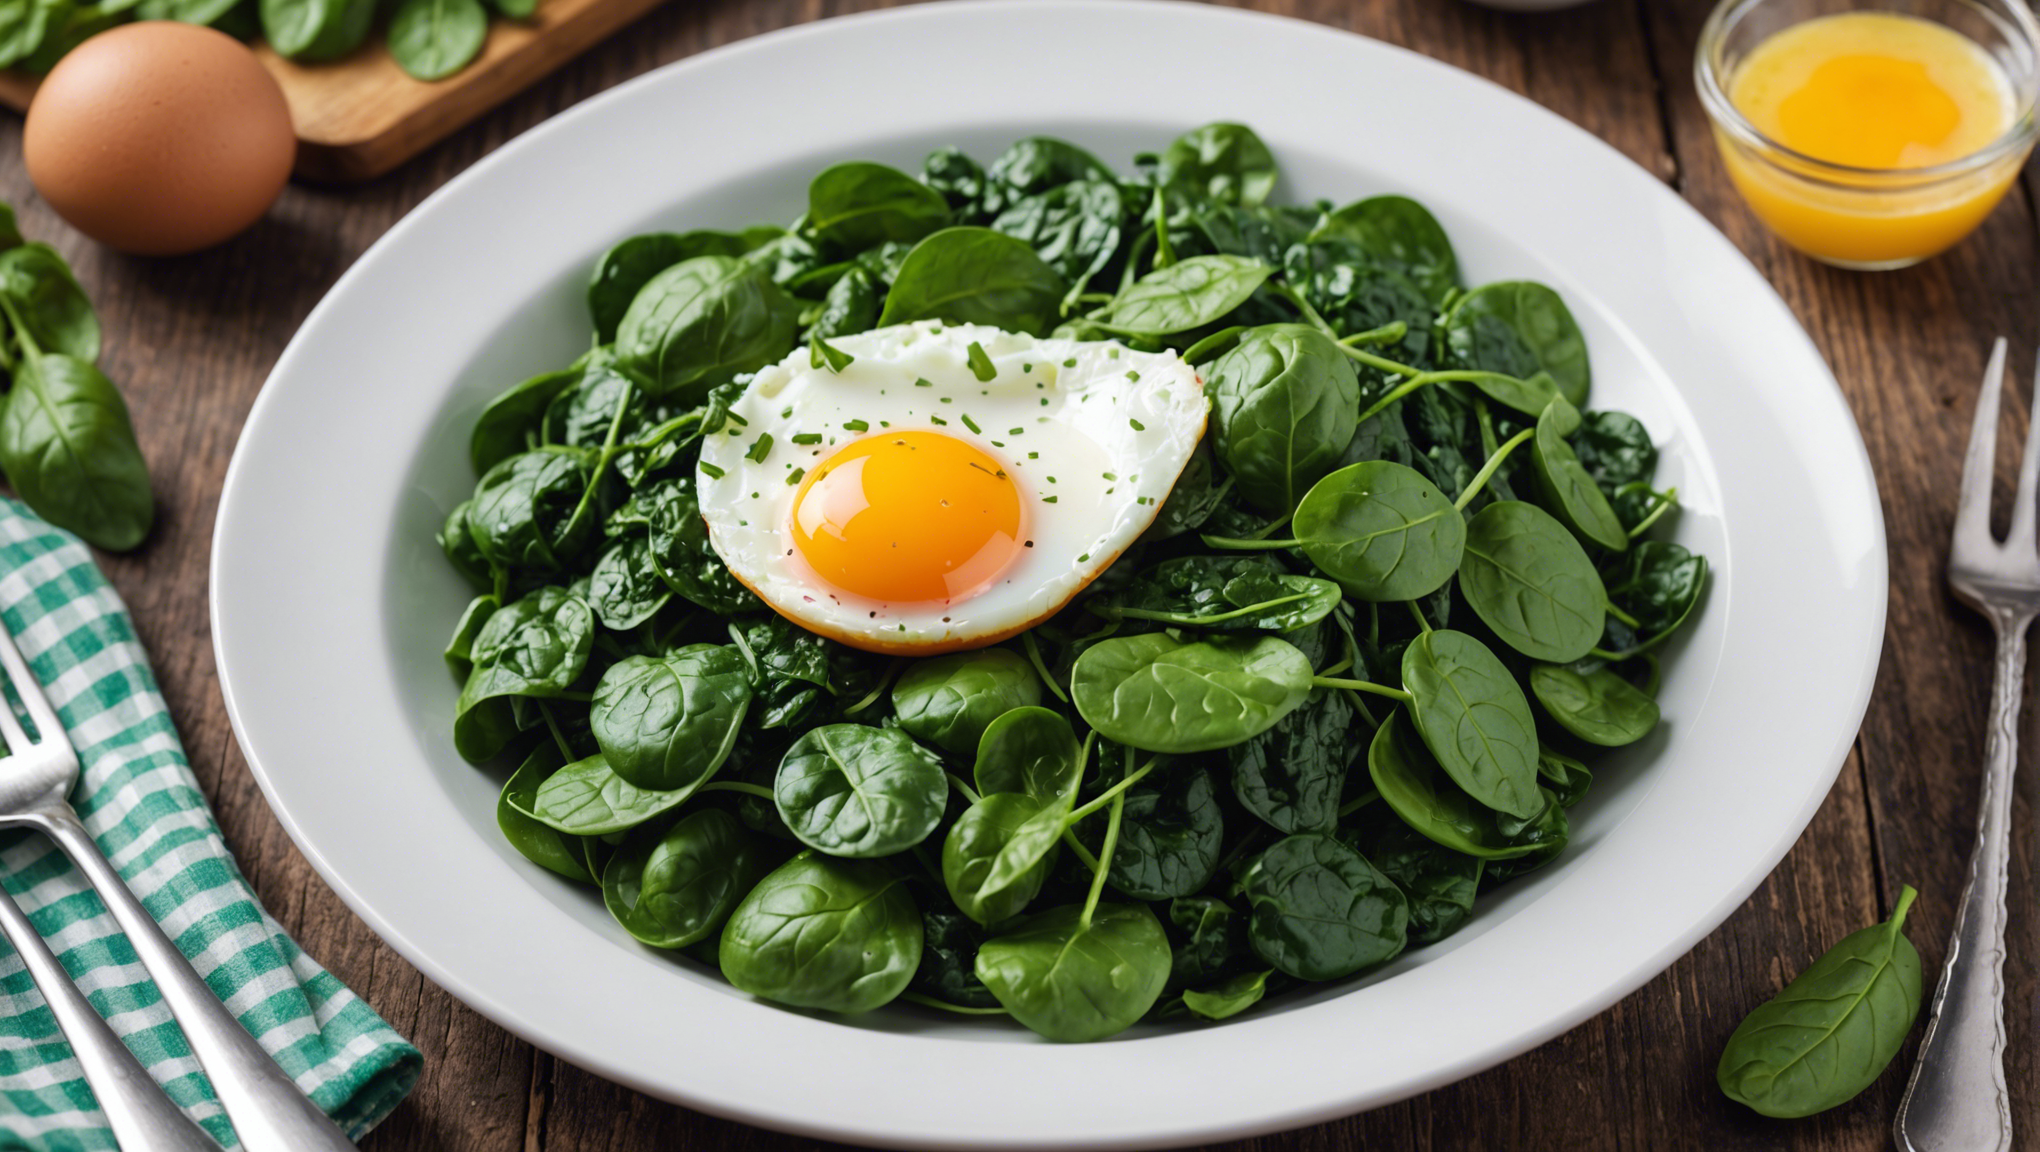 découvrez comment réaliser une délicieuse recette d'épinards aux œufs en suivant nos étapes simples et savoureuses.